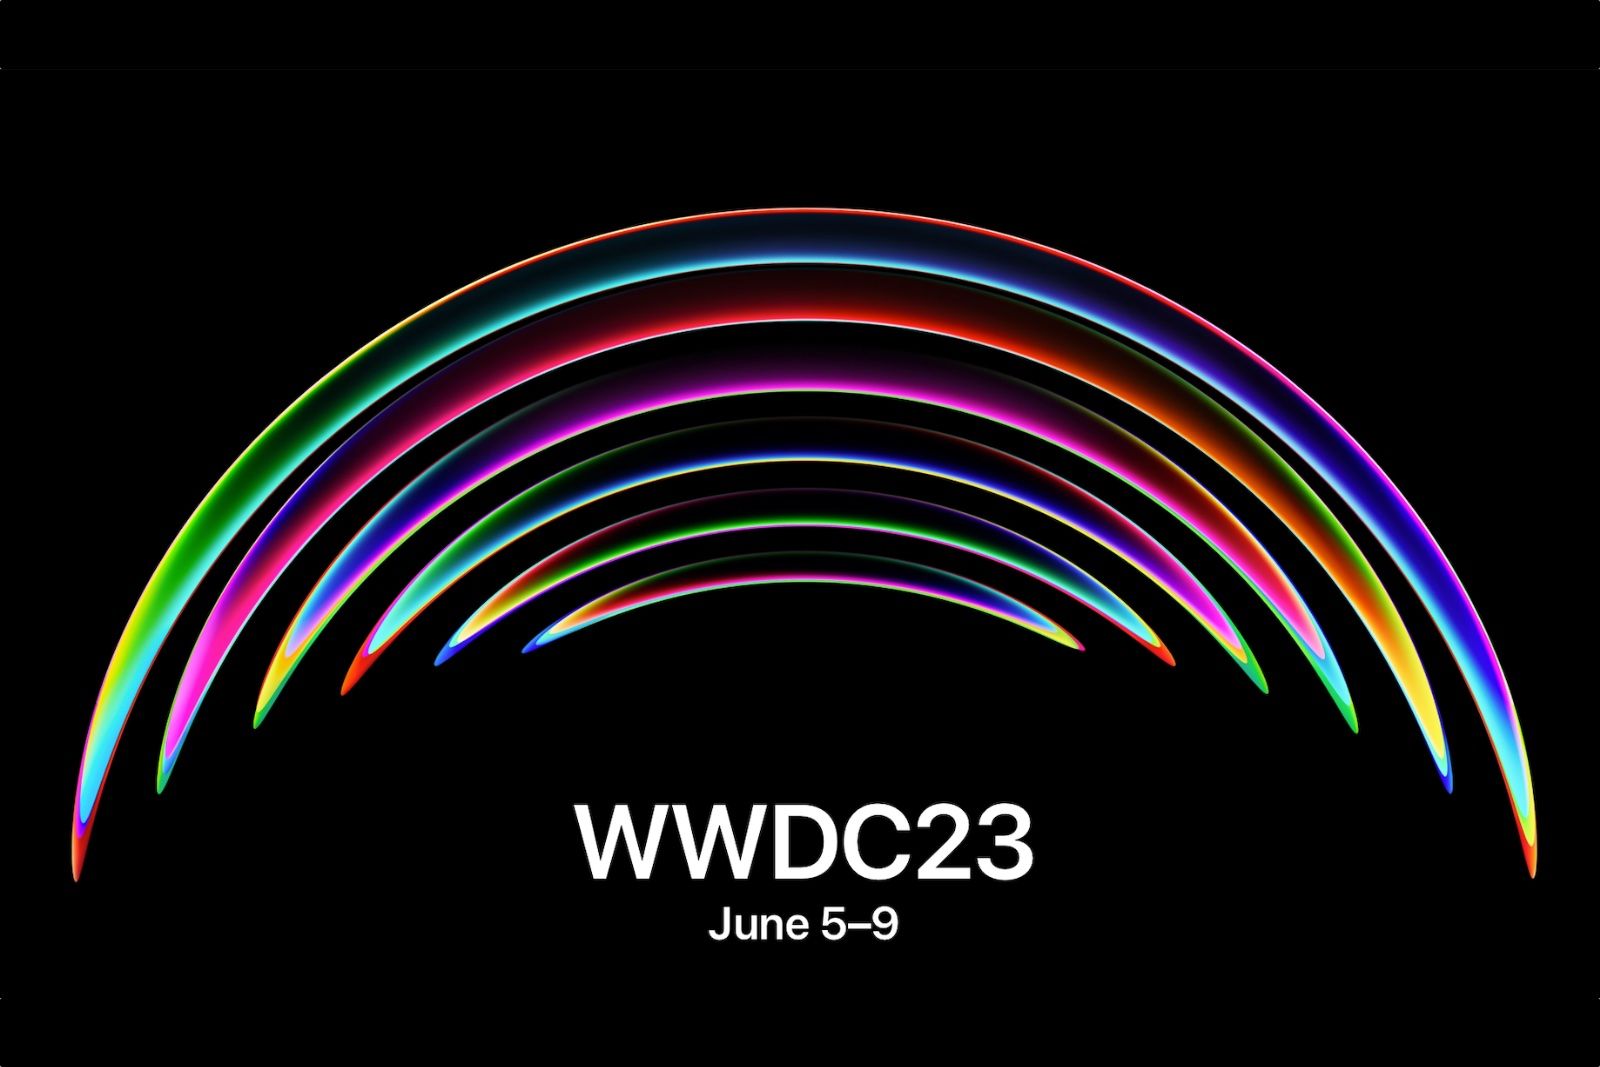 wwdc23 logo